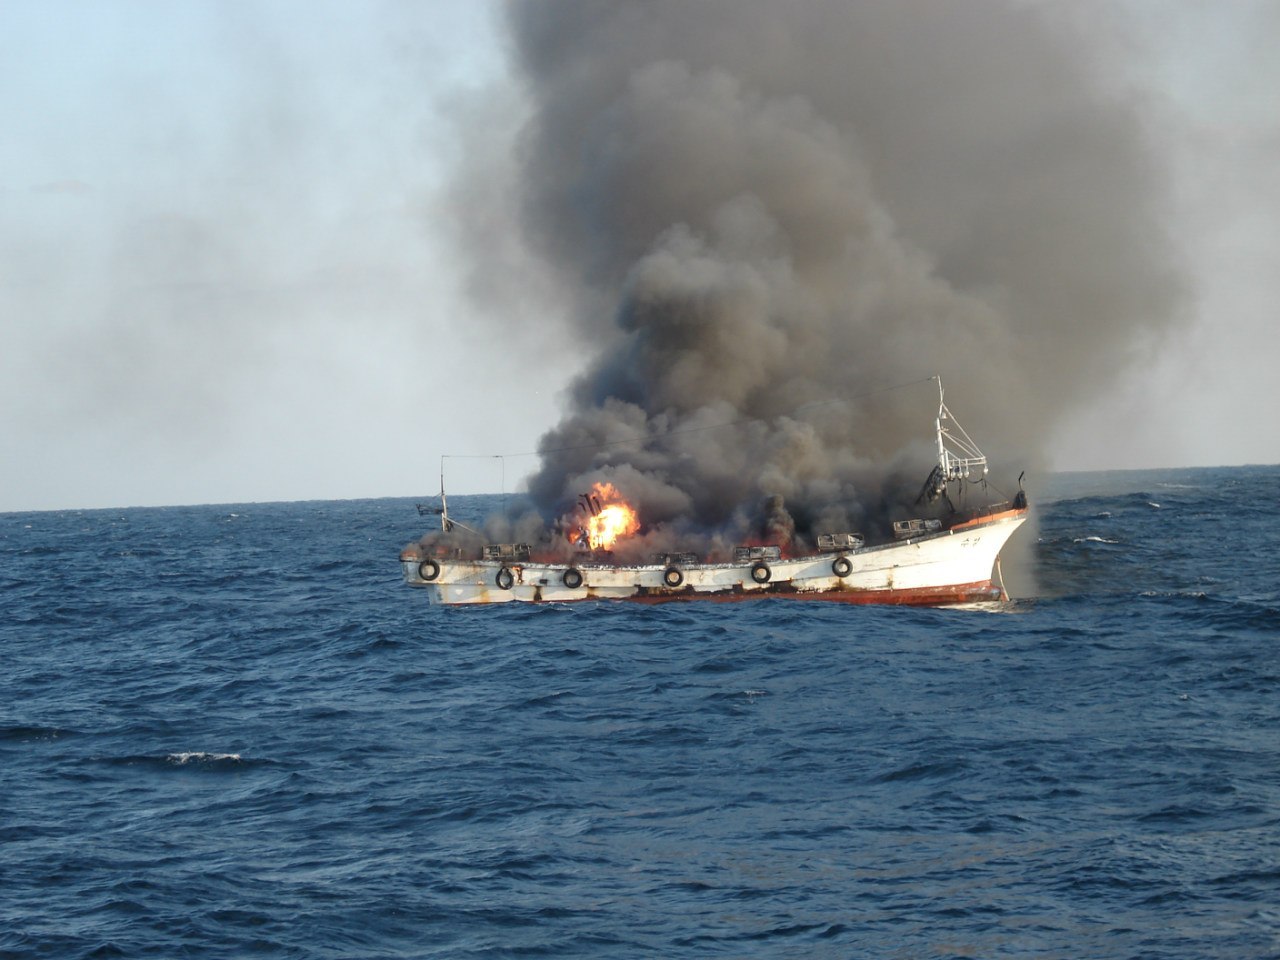 Fire on the Korean schooner - Fire, Sea, Ship, Schooner, Not mine